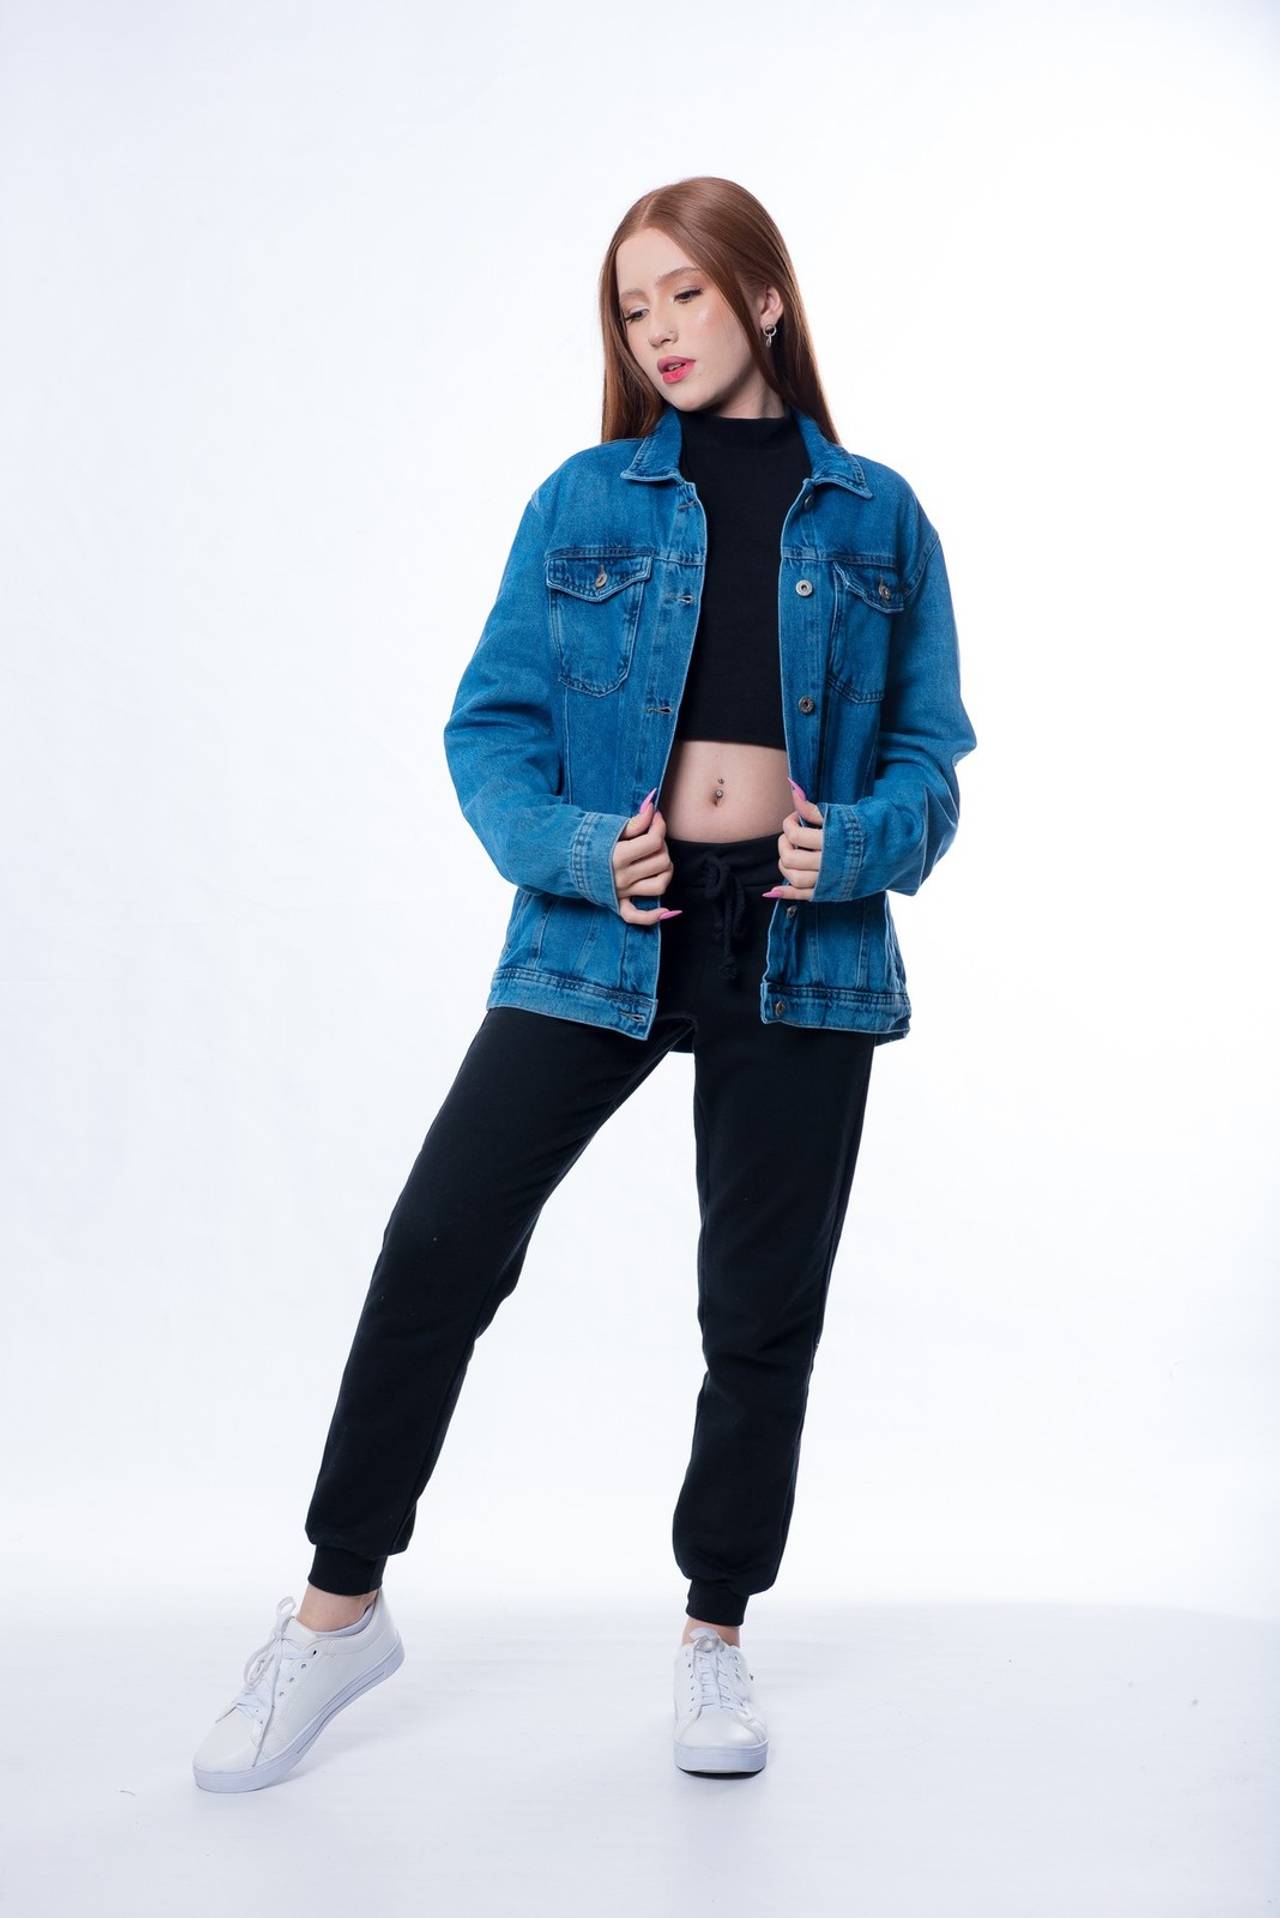 modelo com pose espontânea vestindo jaqueta jeans